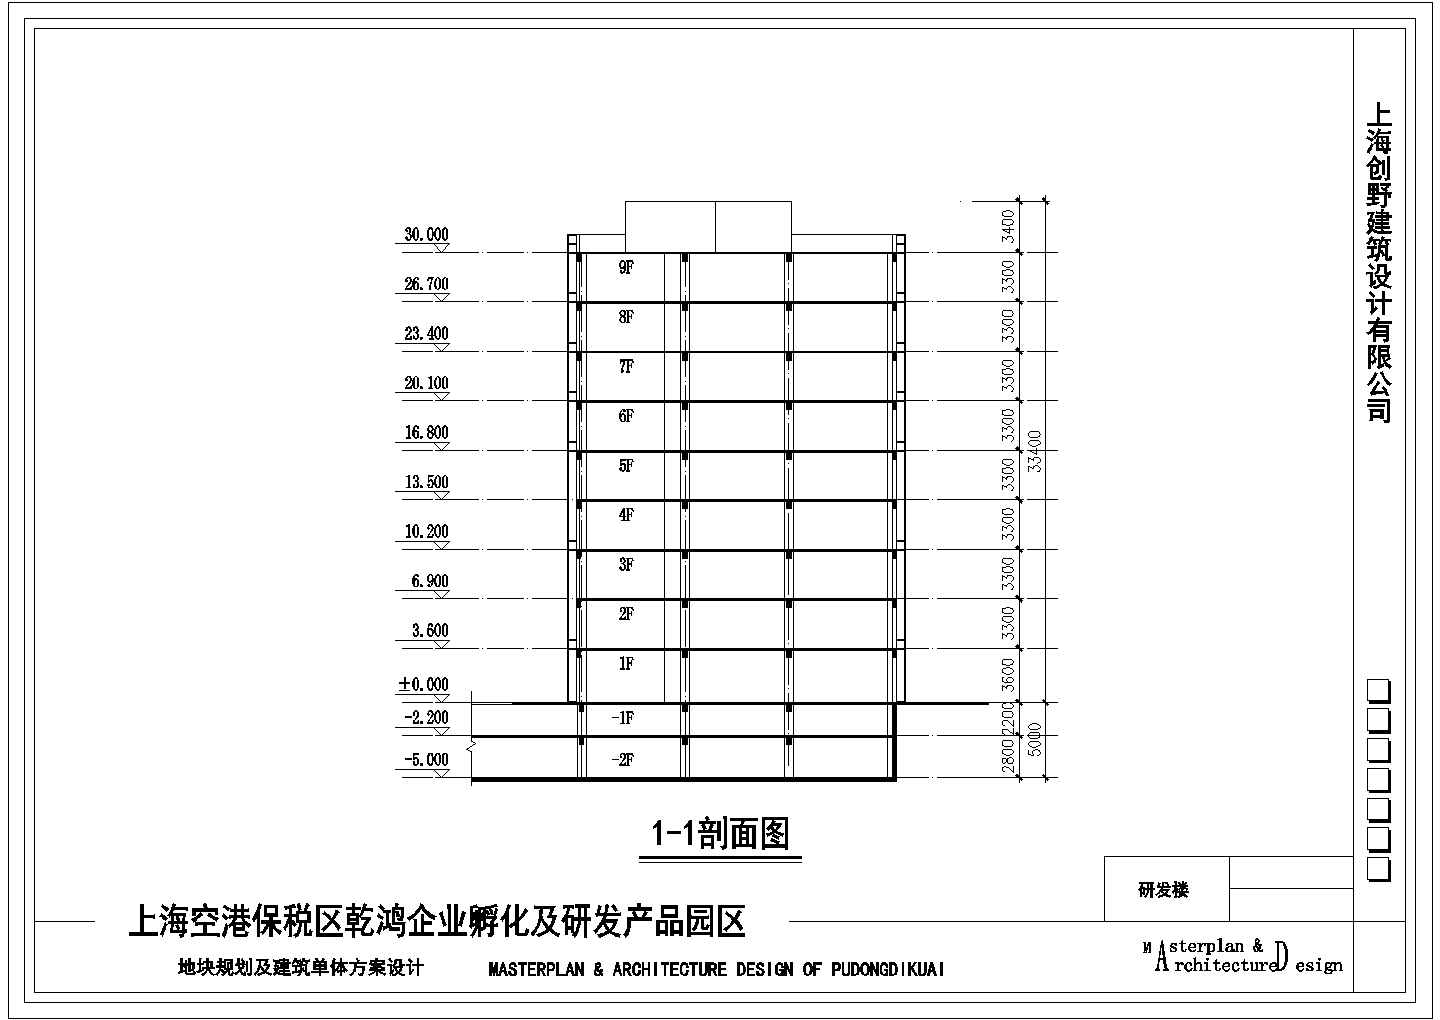 上海某大型综合商业园区总平面规划设计方案图